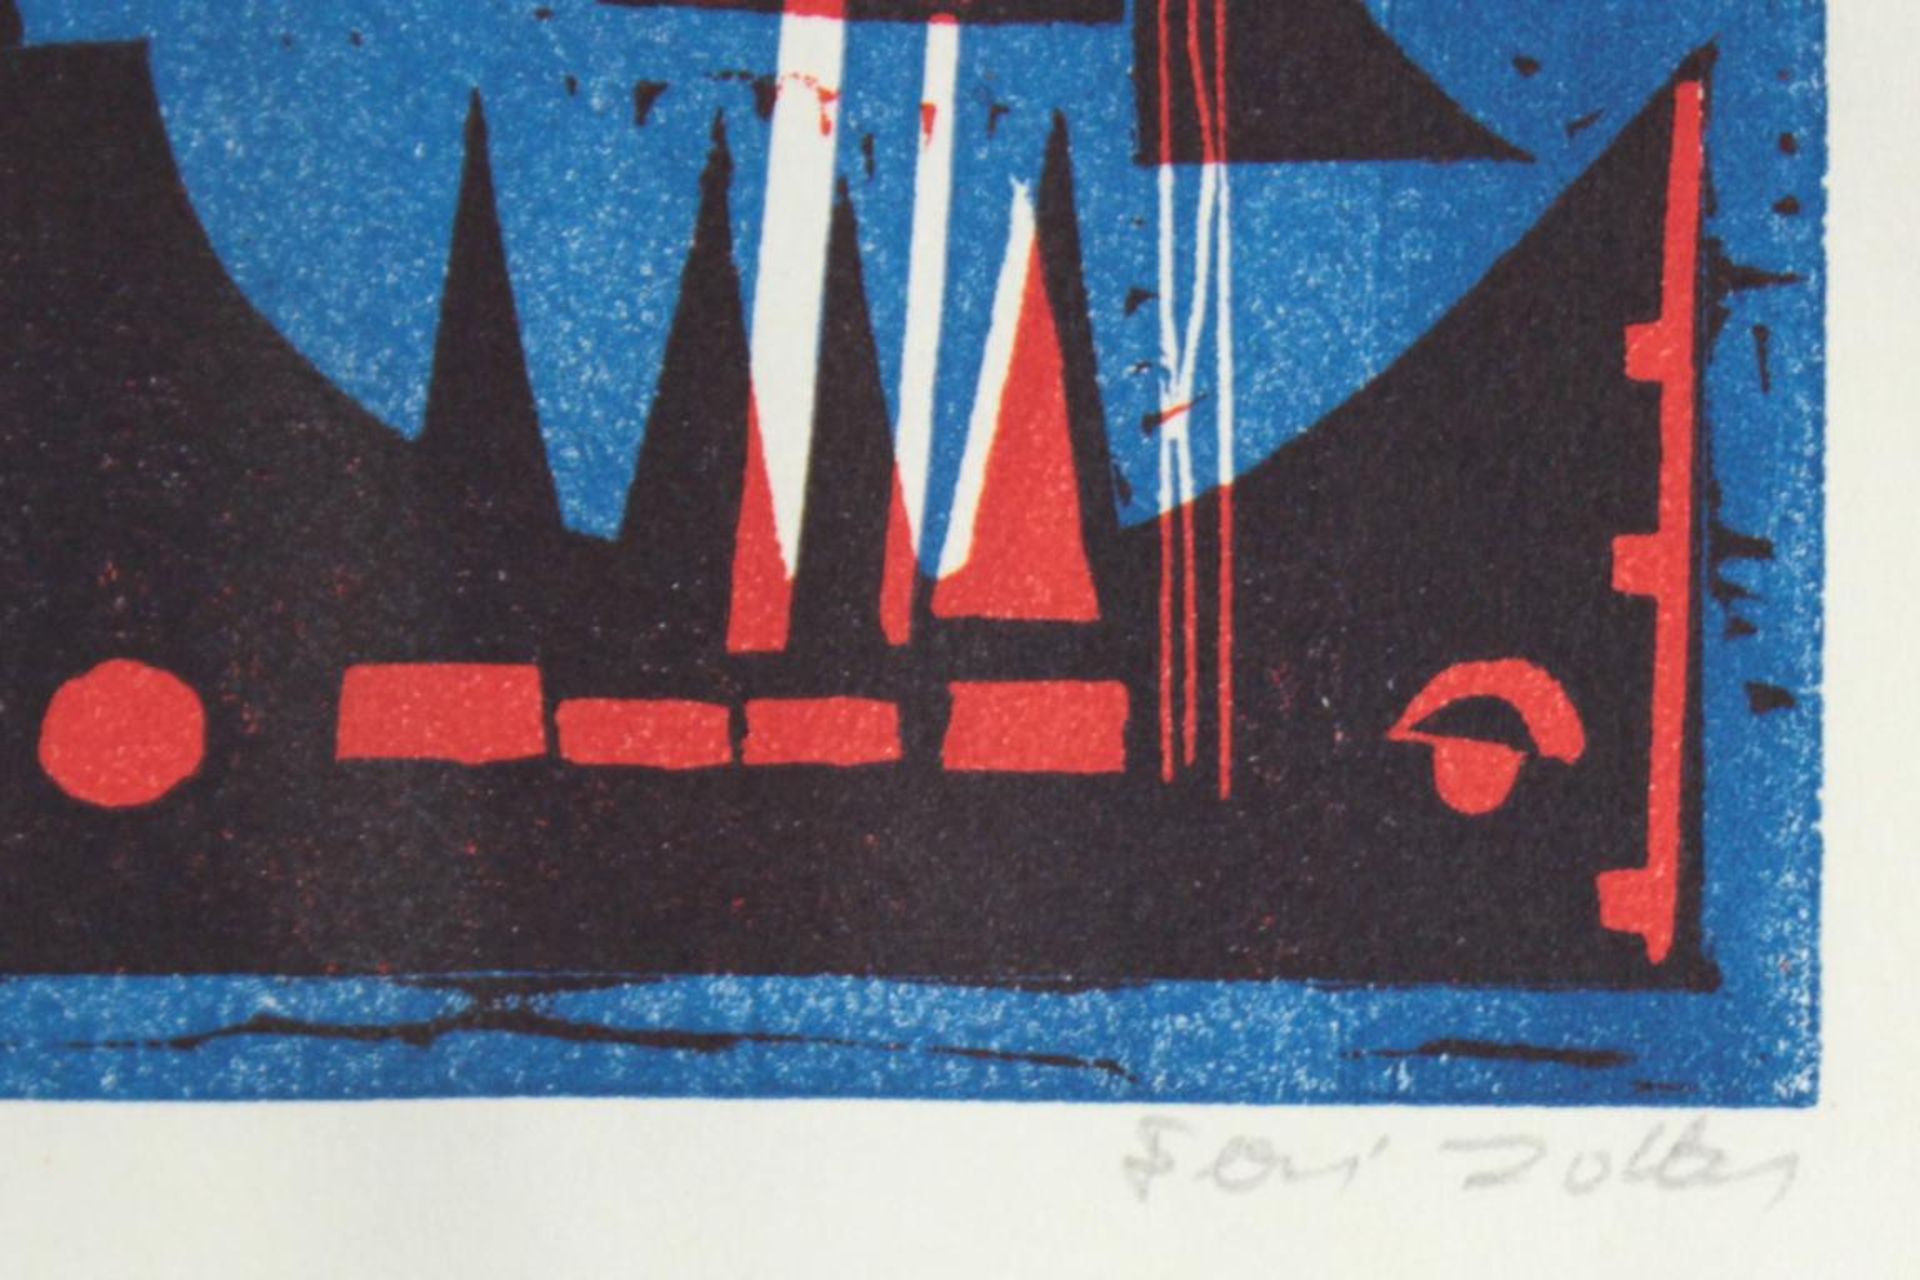  Feri Zotter(1923 - 1987)"Hafen"1966Linolschnitt auf Papier; Ed. 49/50/II; signiert, datiert, nummer - Bild 2 aus 3